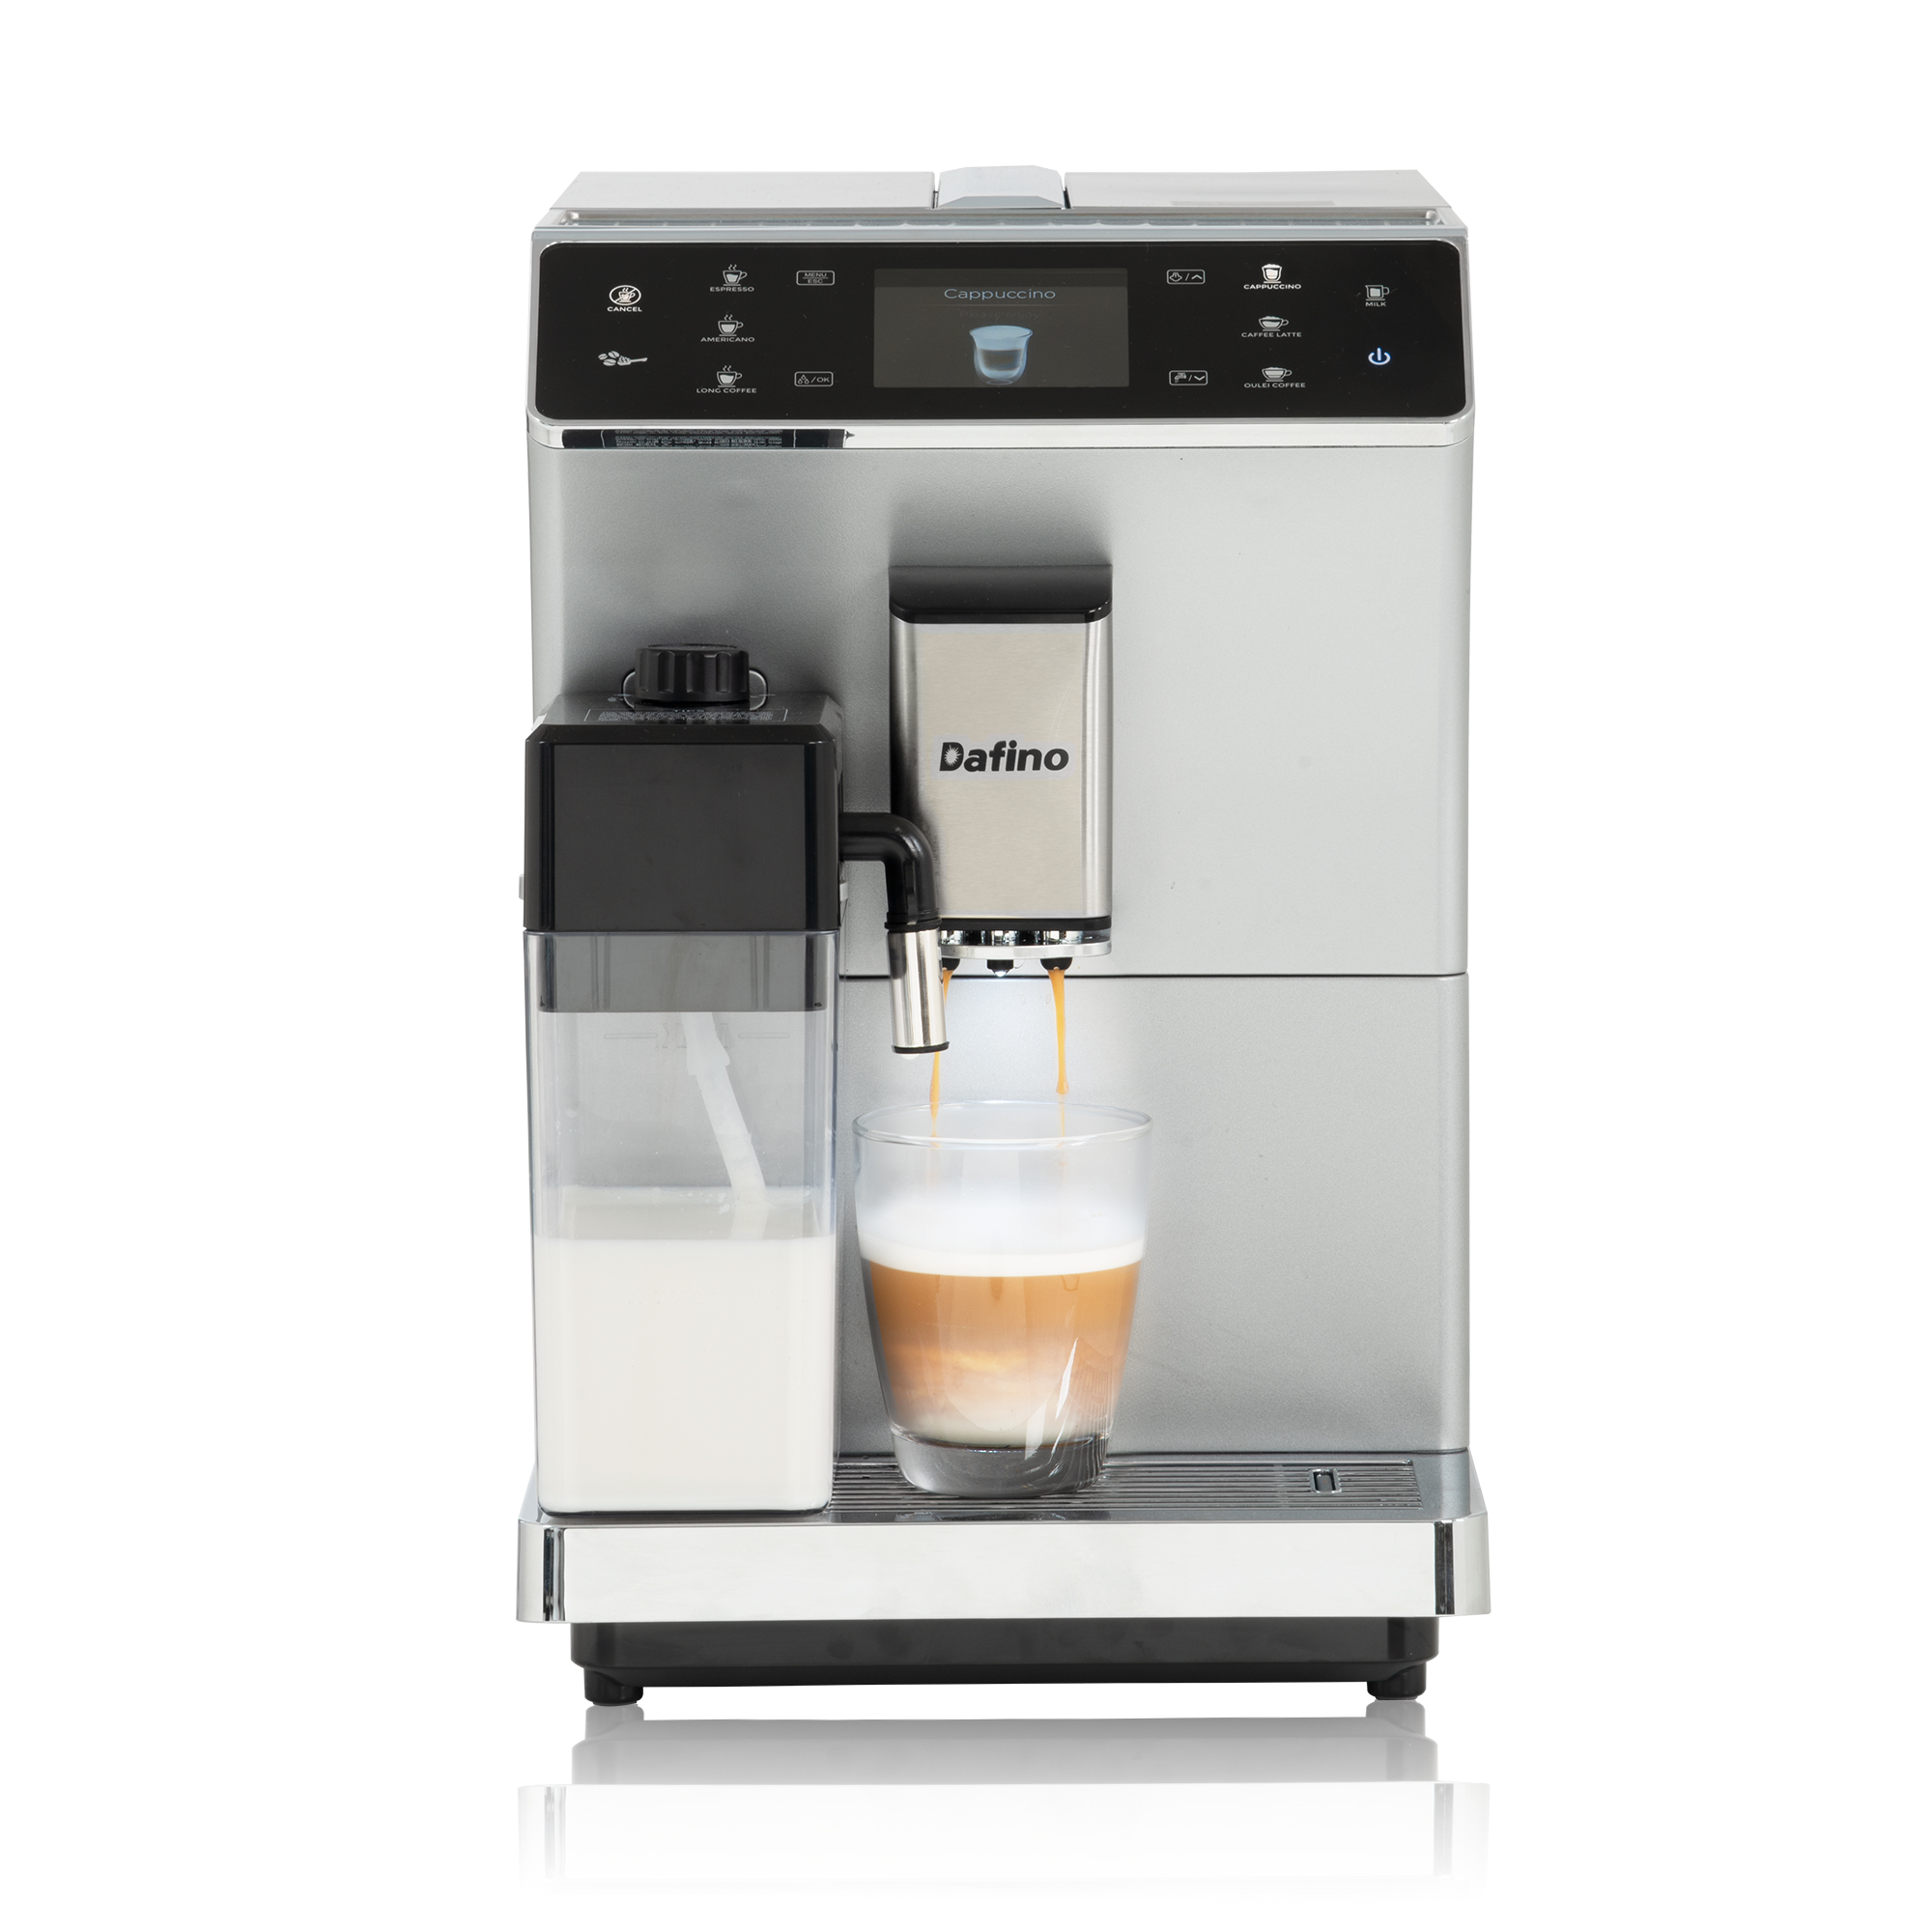 Dafino-202 Fully Automatic Espresso Machine with milk tank, silver-CASAINC